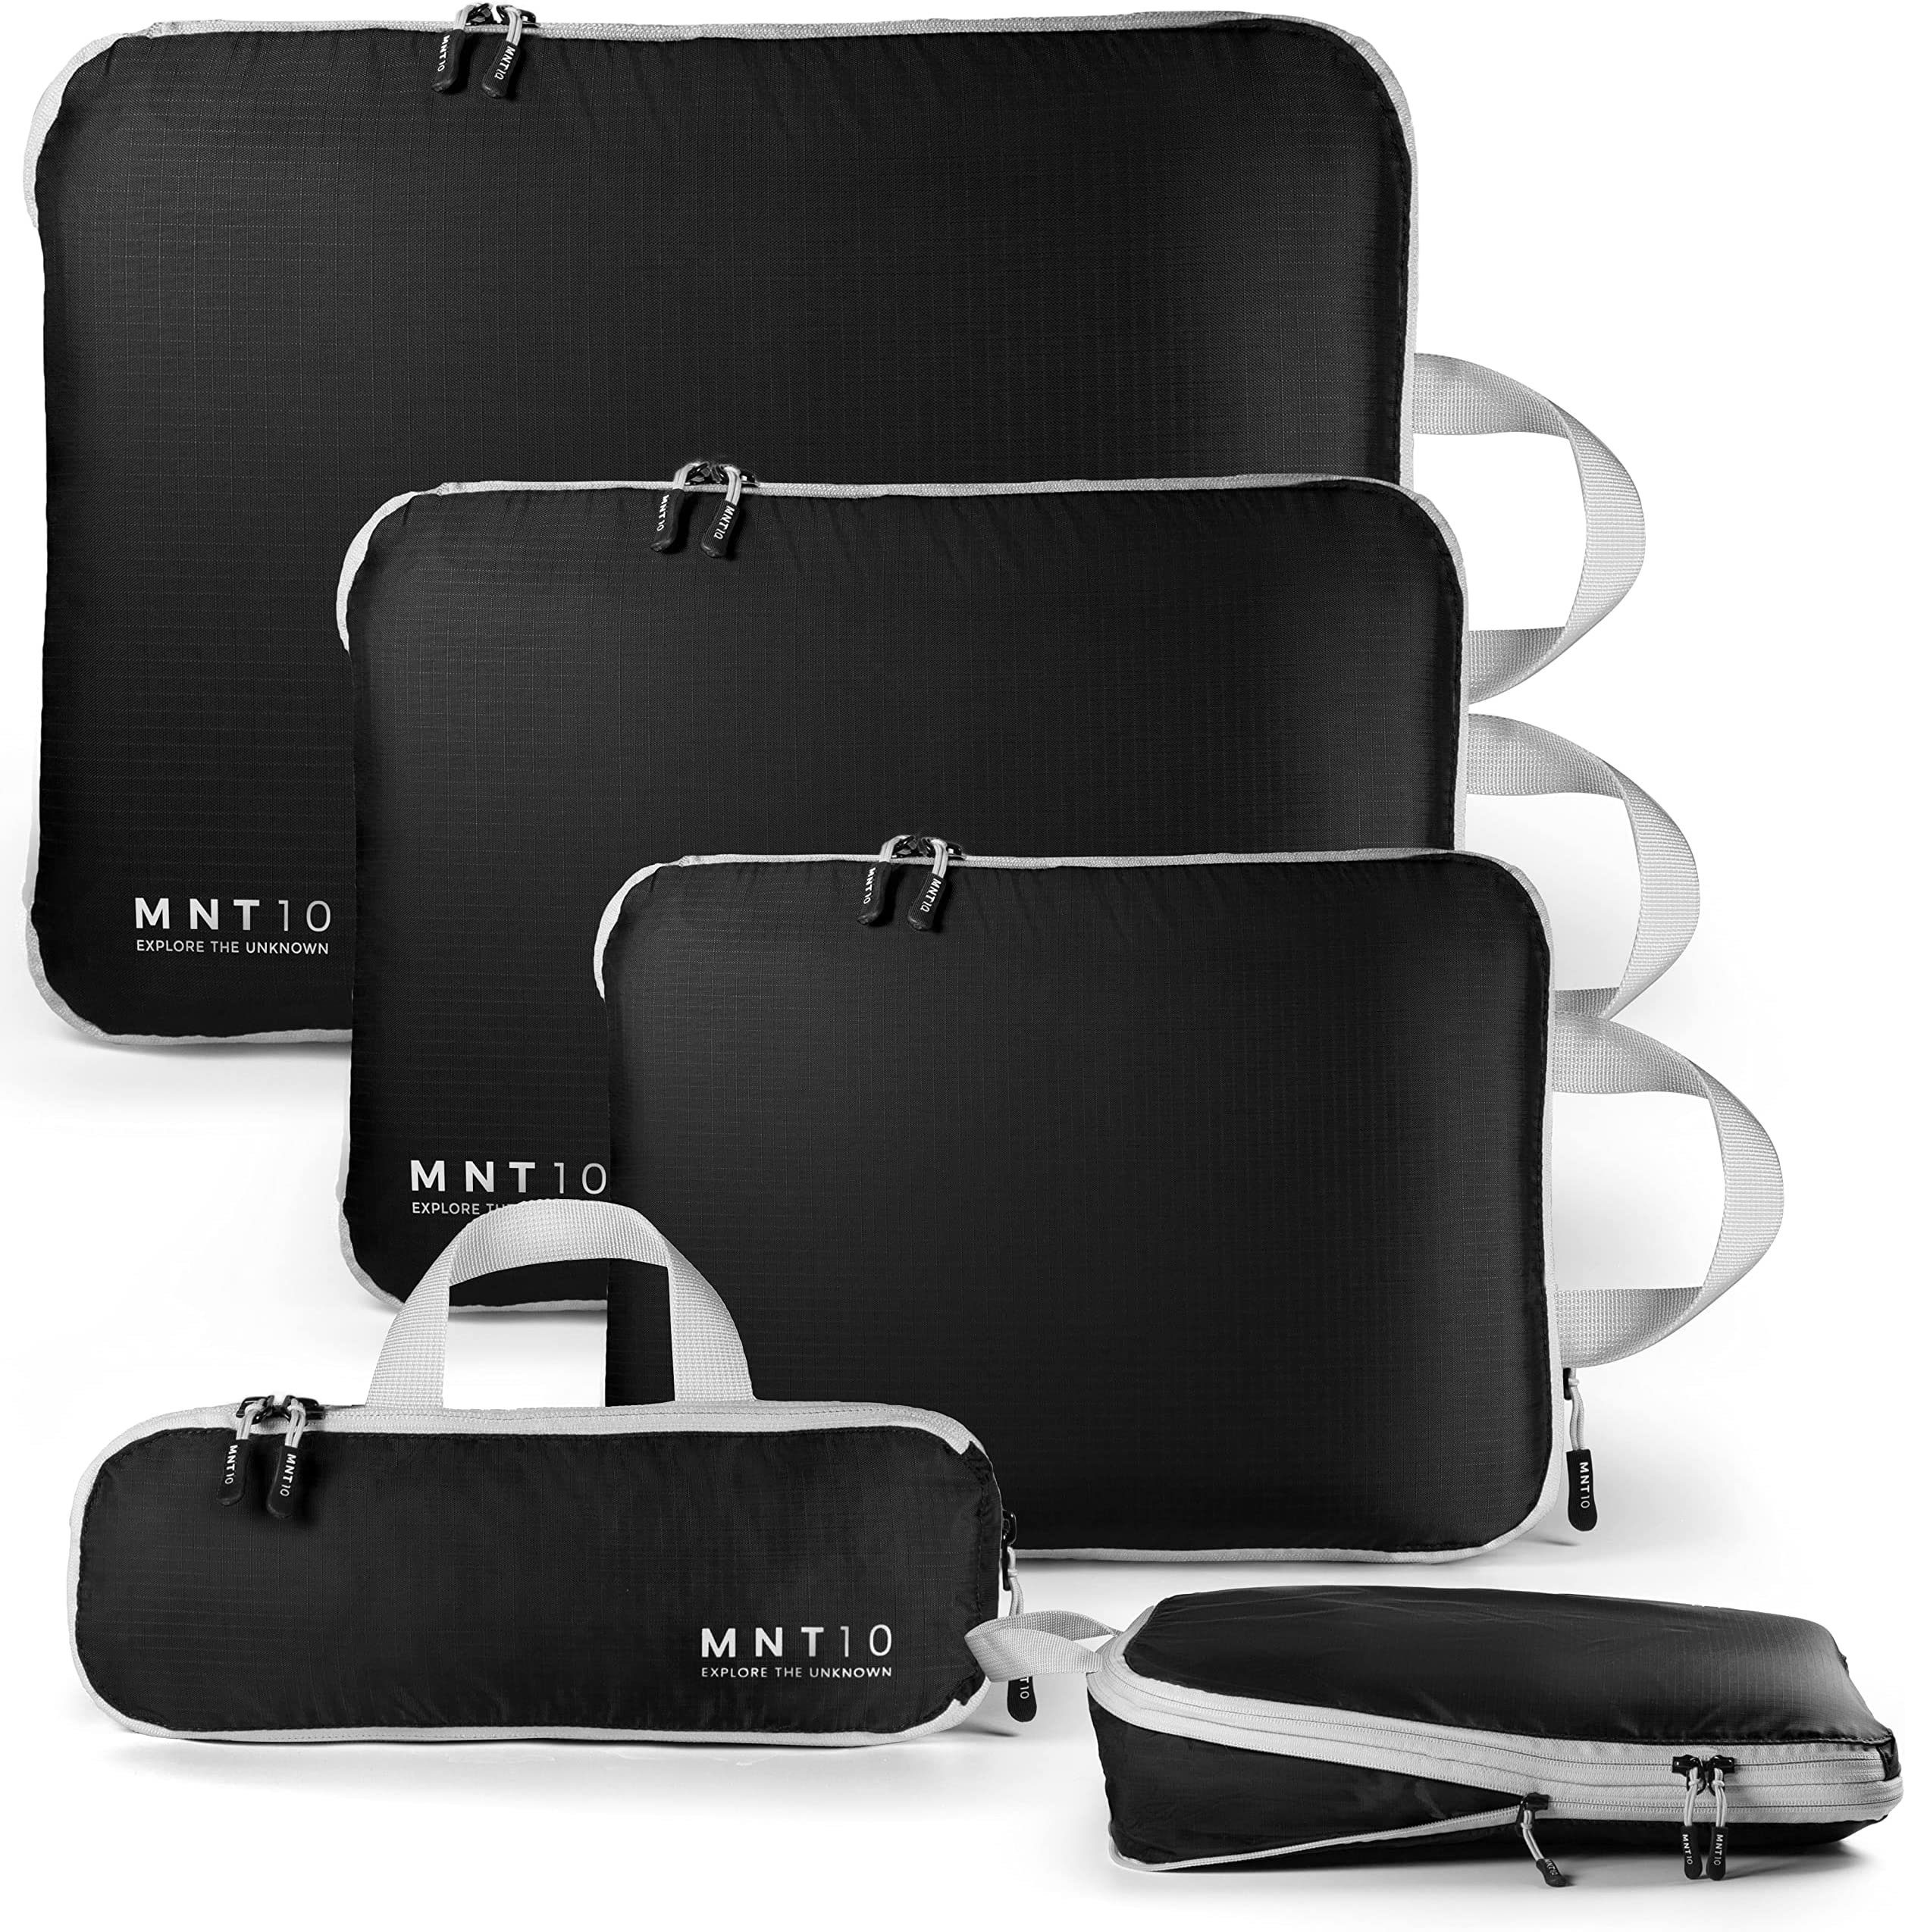 XL Koffer-Organizer L, M, S, MNT10 Recycelte Kofferorganizer Kompression Packtaschen mit